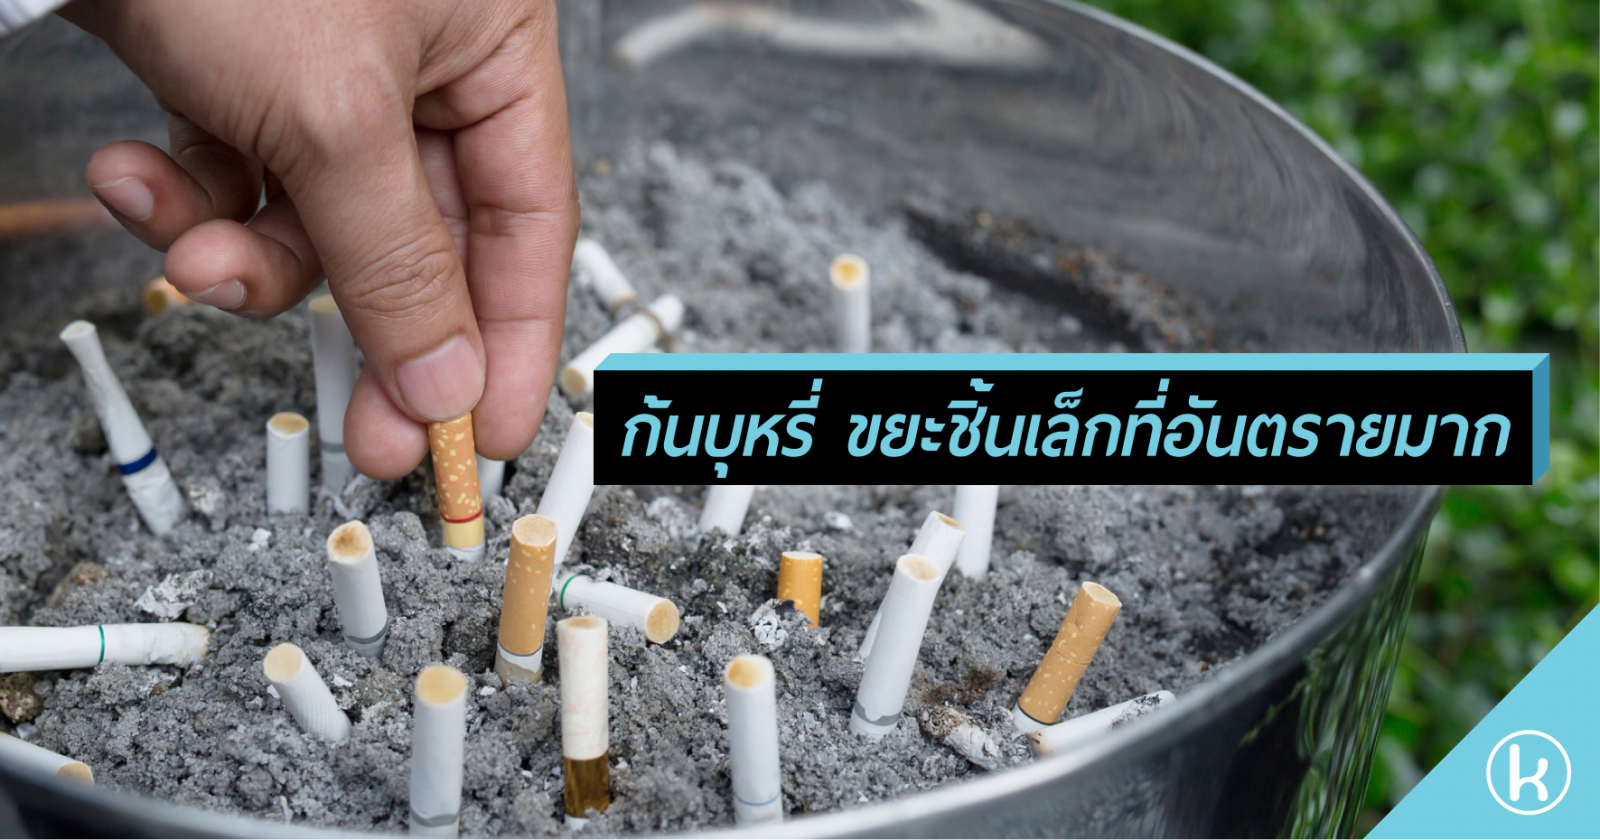 ก้นบุหรี่ ขยะชิ้นเล็กที่อันตรายมาก